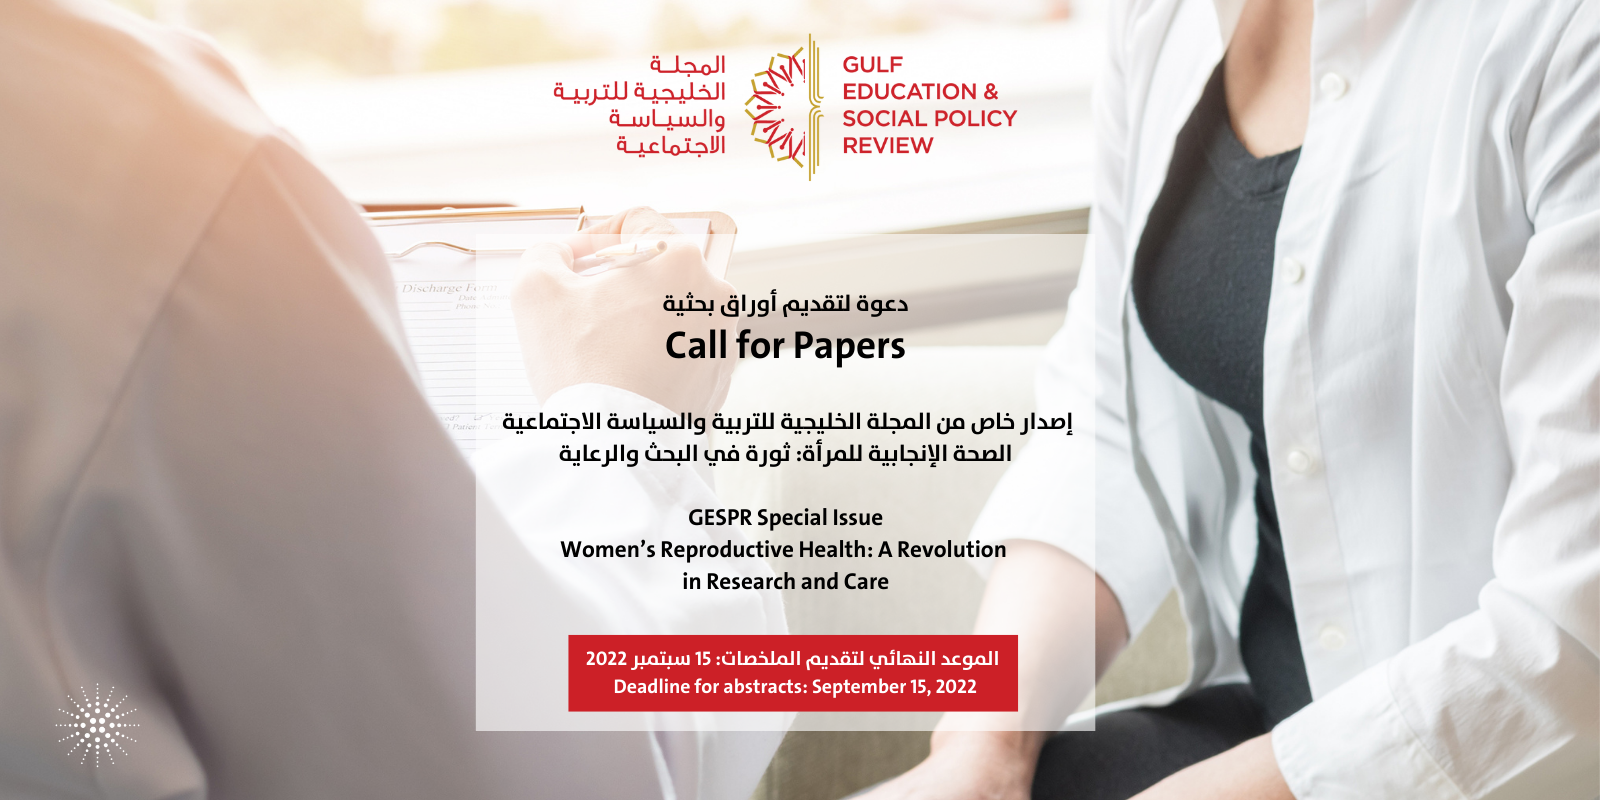 Copy of دعوة لتقديم أوراق بحثية إصدار خاص من المجلة الخليجية للتربية والسياسة الاجتماعية الصحة الإنجابية للمرأة ثورة في البحث والرعاي